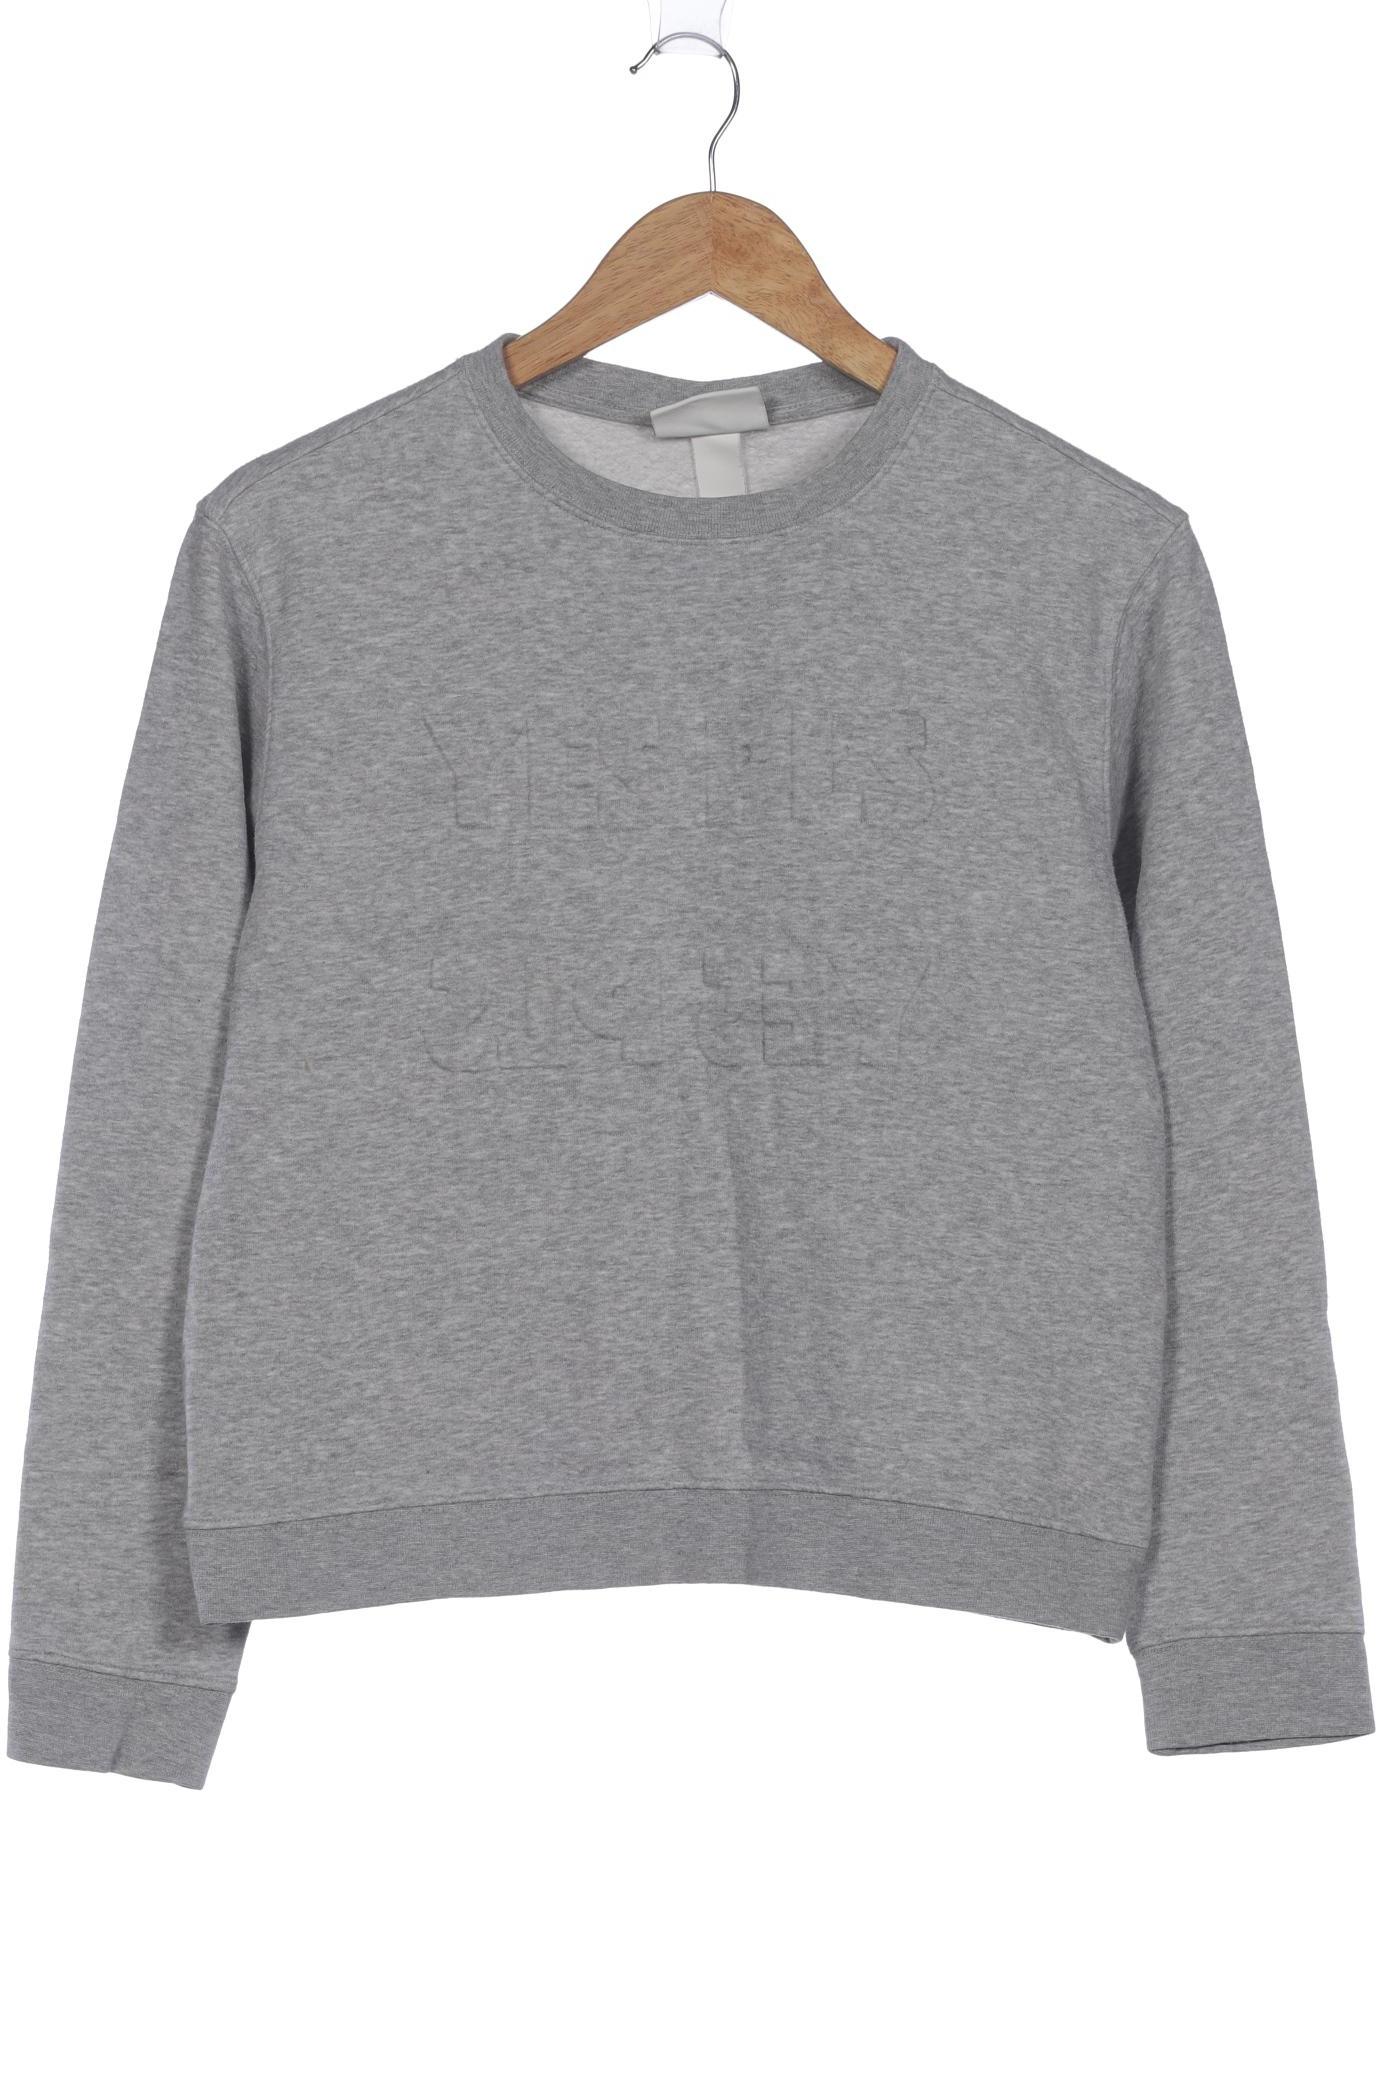 Monki Damen Sweatshirt, grau, Gr. 32 von Monki